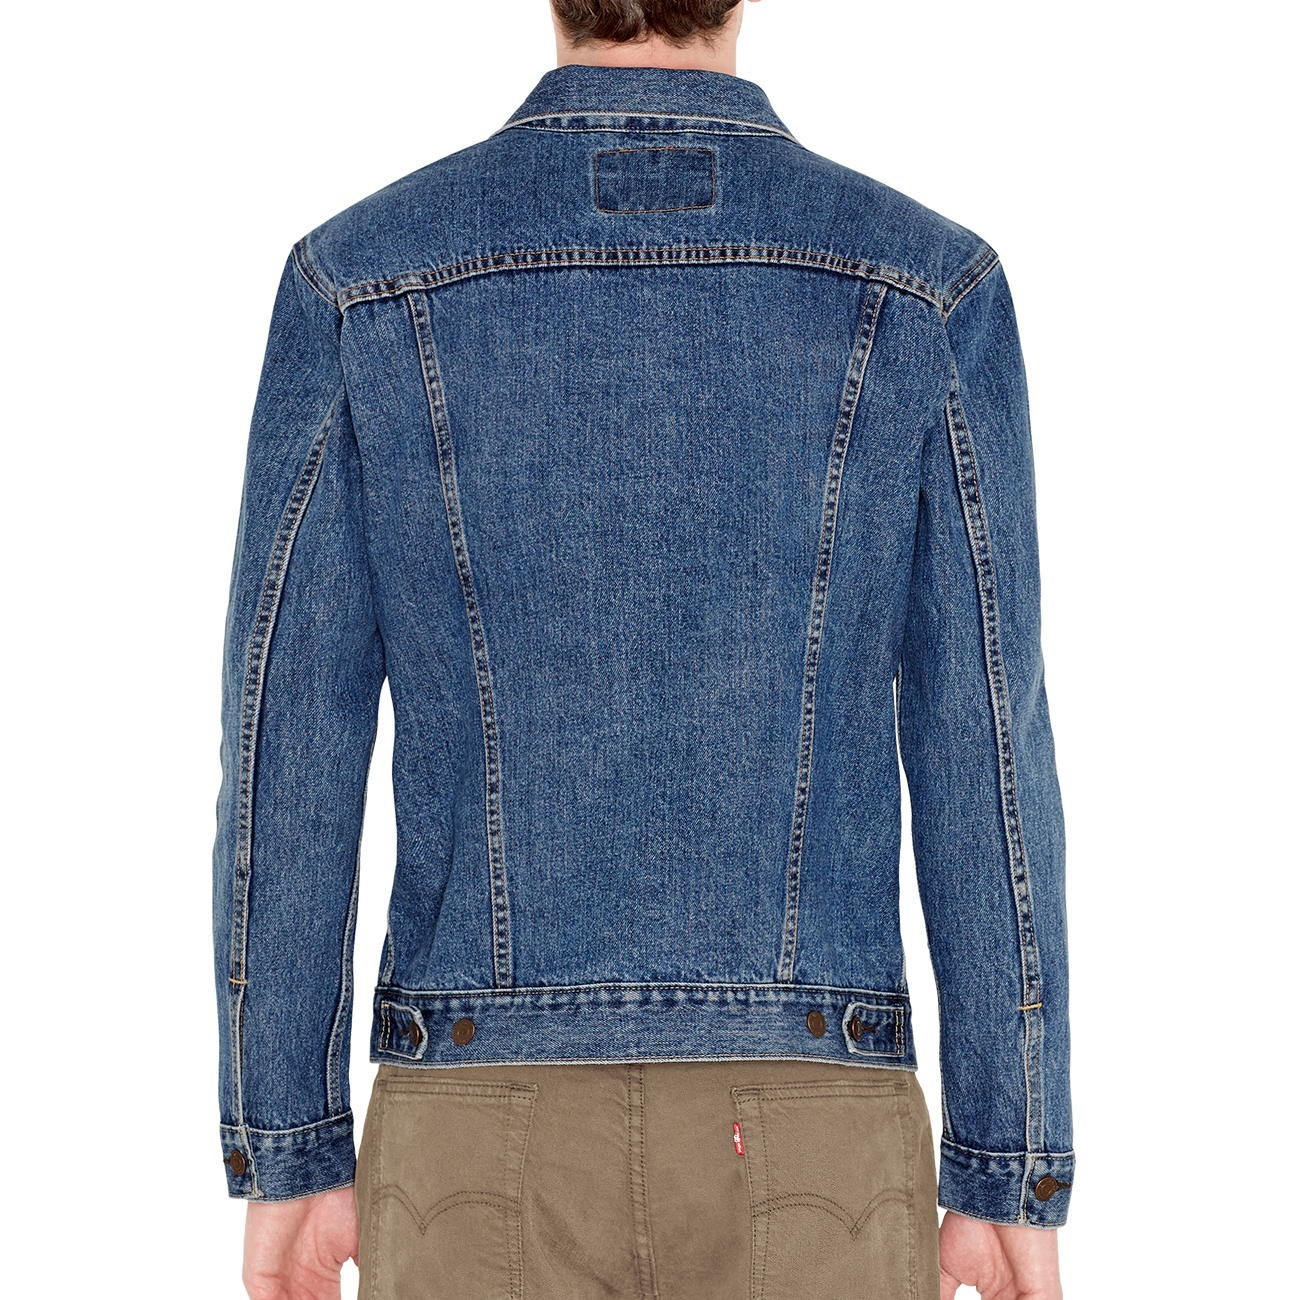 Купить джинсовую куртку на озоне. Levis Trucker Jacket. Levis 187220057. Levis 72334. Levis джинсовая куртка 70901.